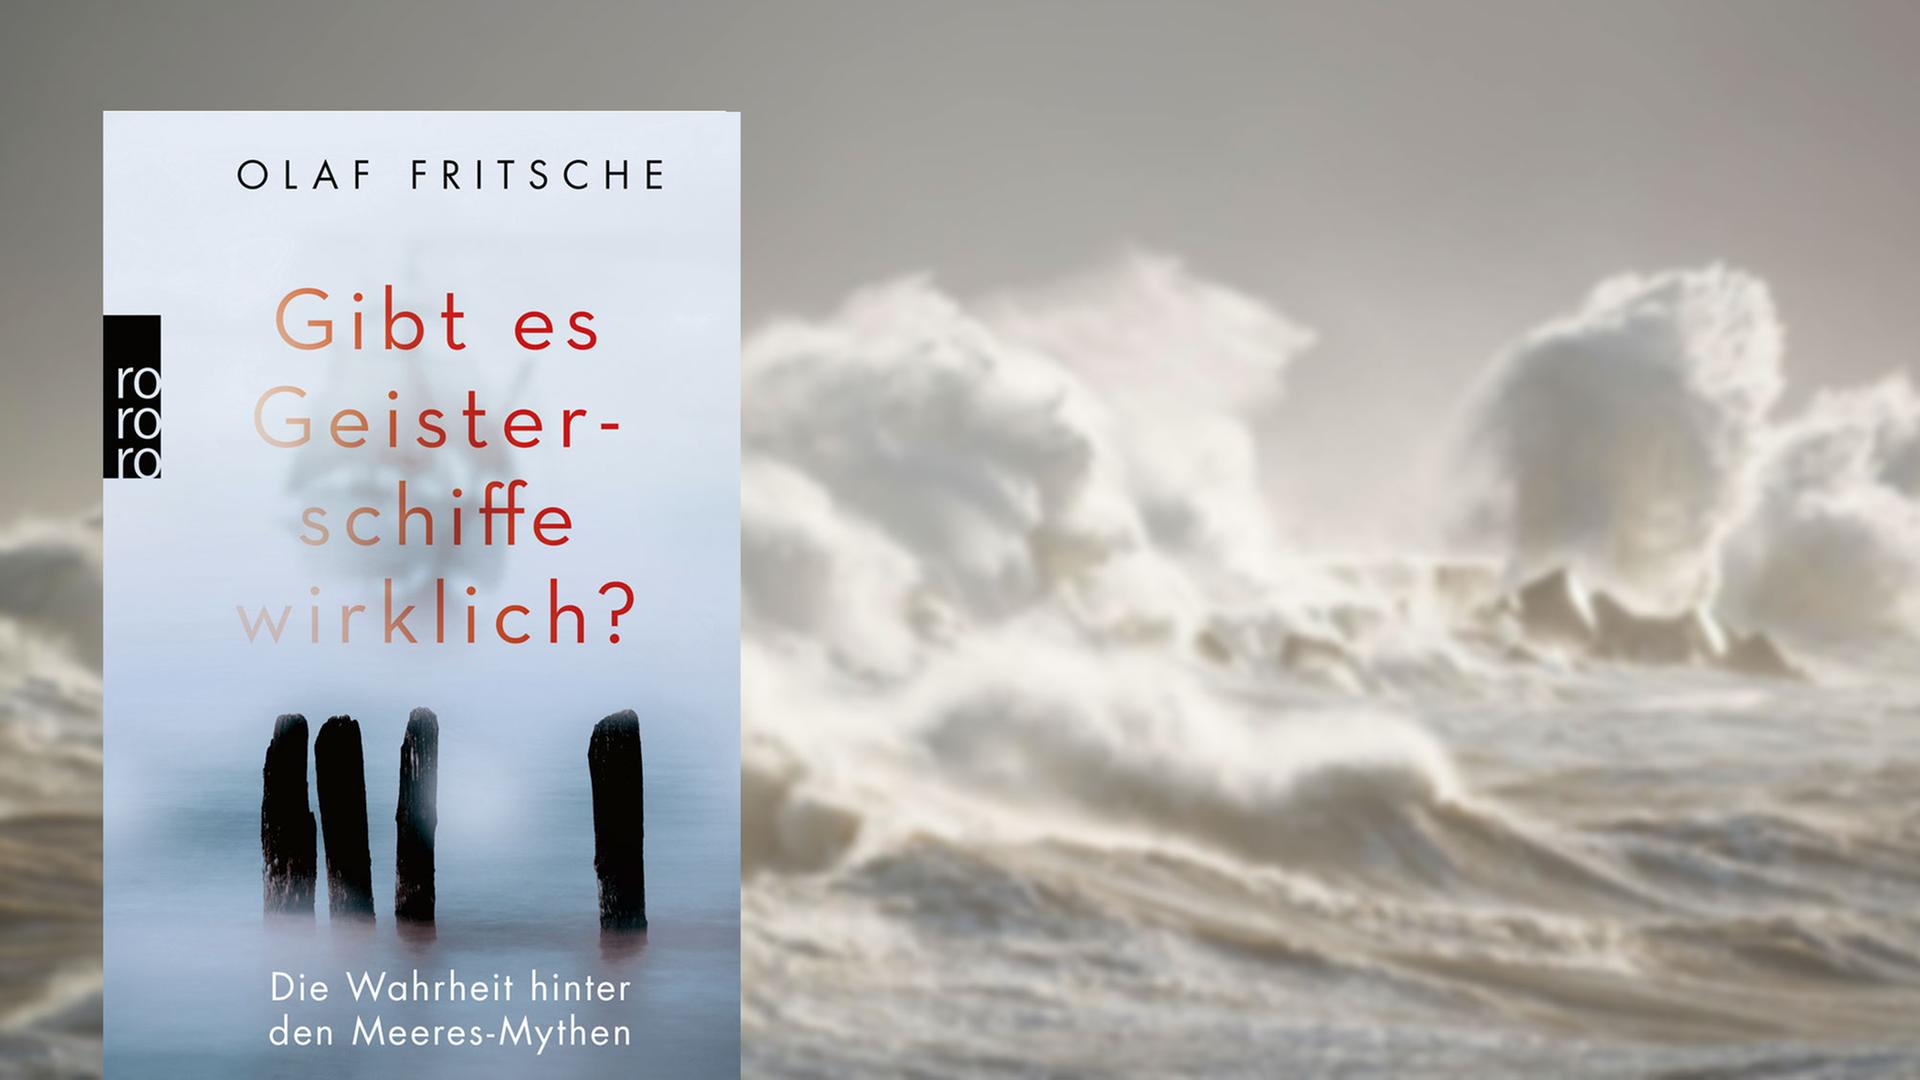 Buchcover "Gibt es Geisterschiffe wirklich?" von Olaf Fritsche, im Hintergrund die stürmische Nordsee